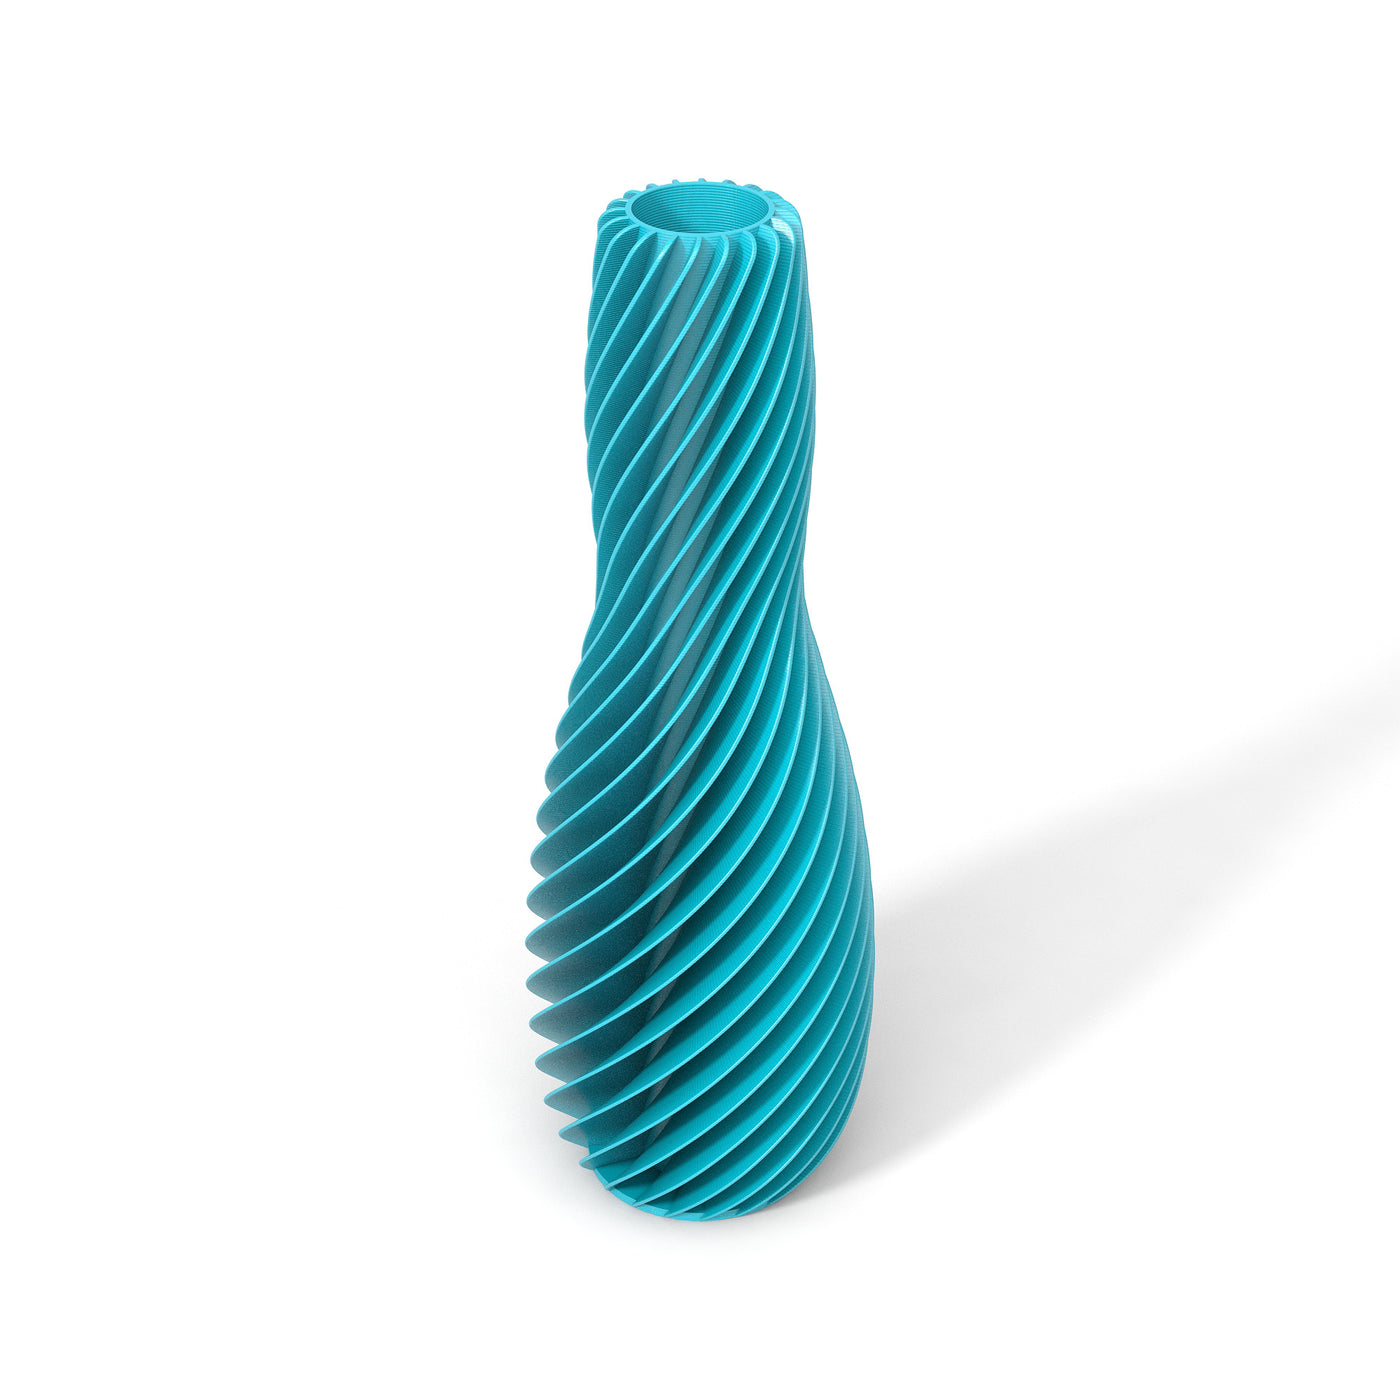 Tyrkysová designová váza 3D print SPIRAL 4